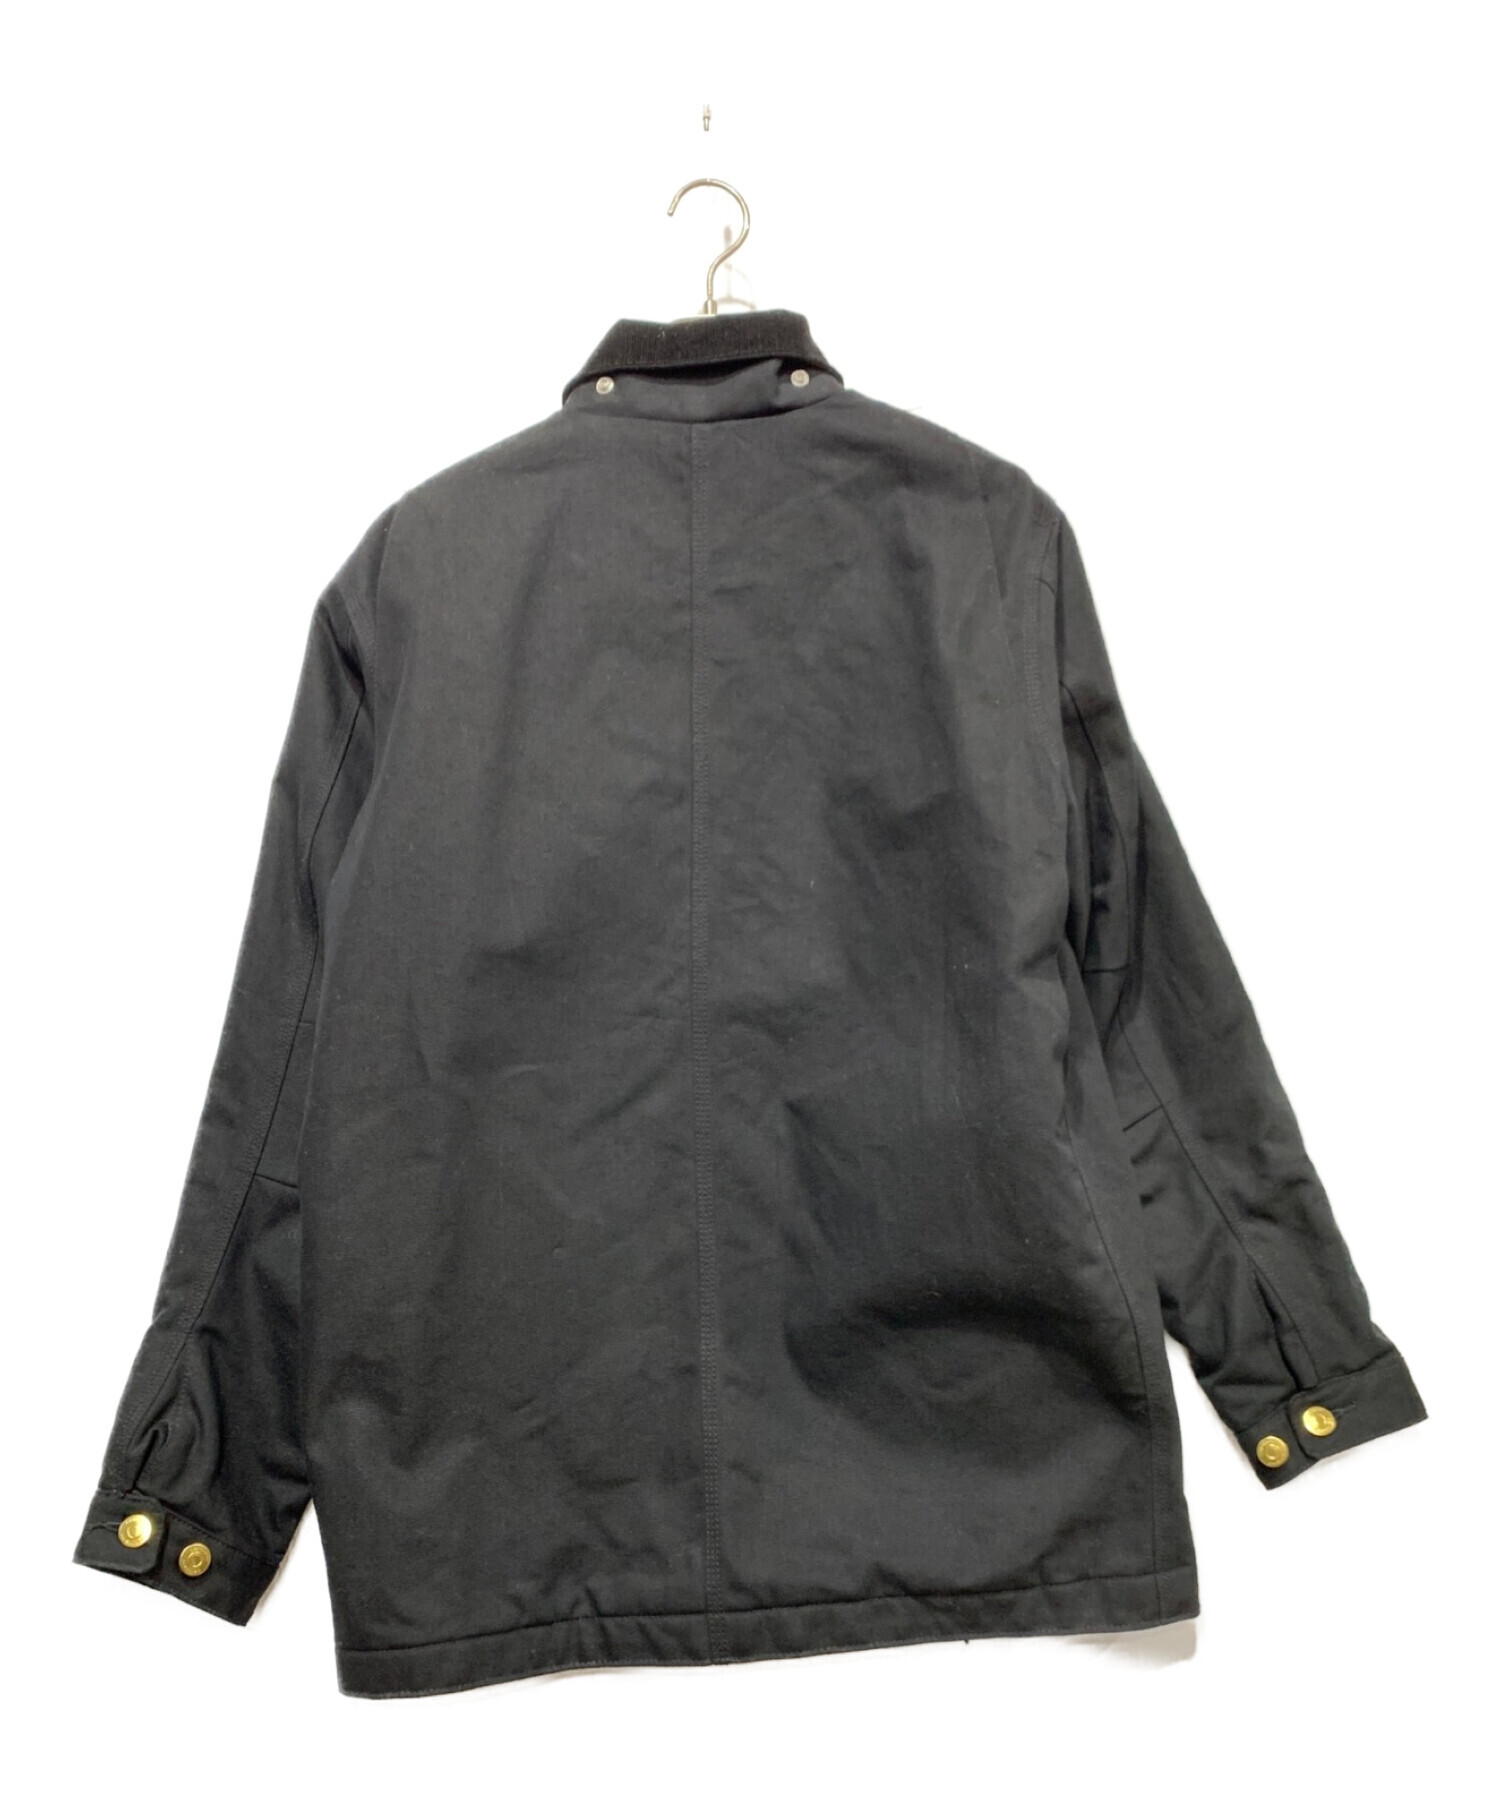 CarHartt (カーハート) ダックジャケット ブラック サイズ:Mサイズ